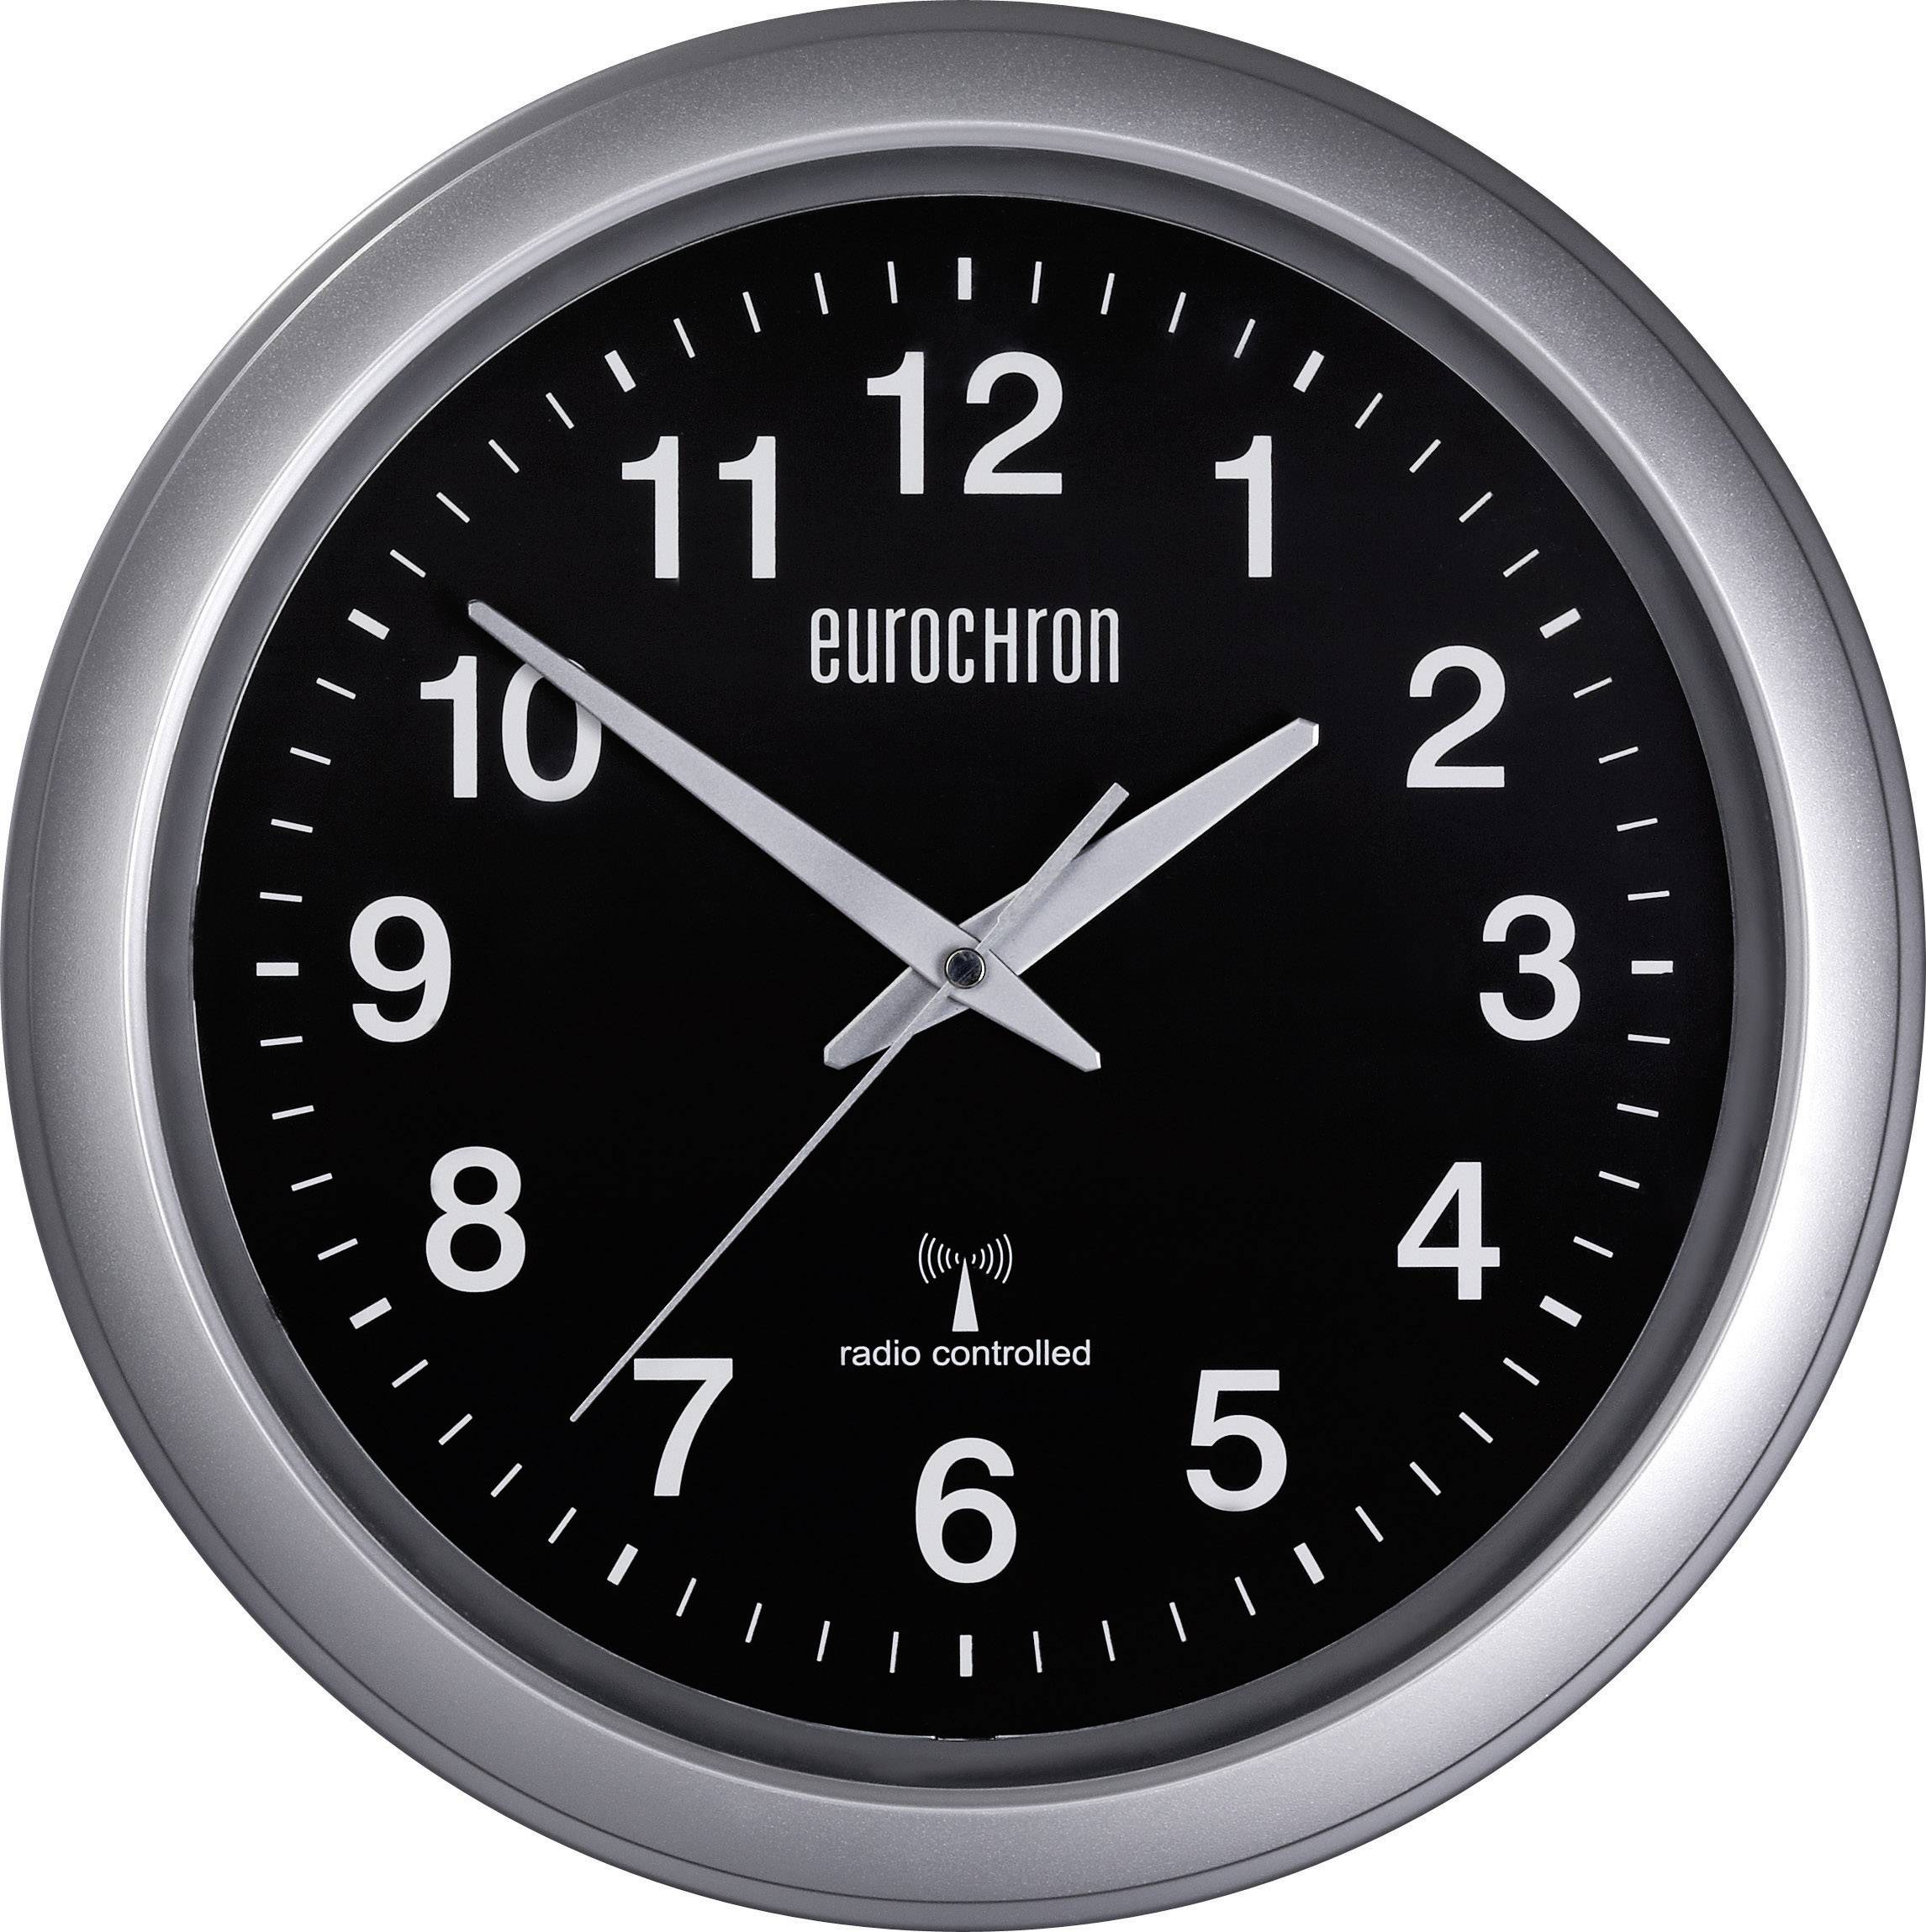 Часы control. Eurochron часы. Radio Controlled Clock. Часы настенные Eurochron. Часы SWC.